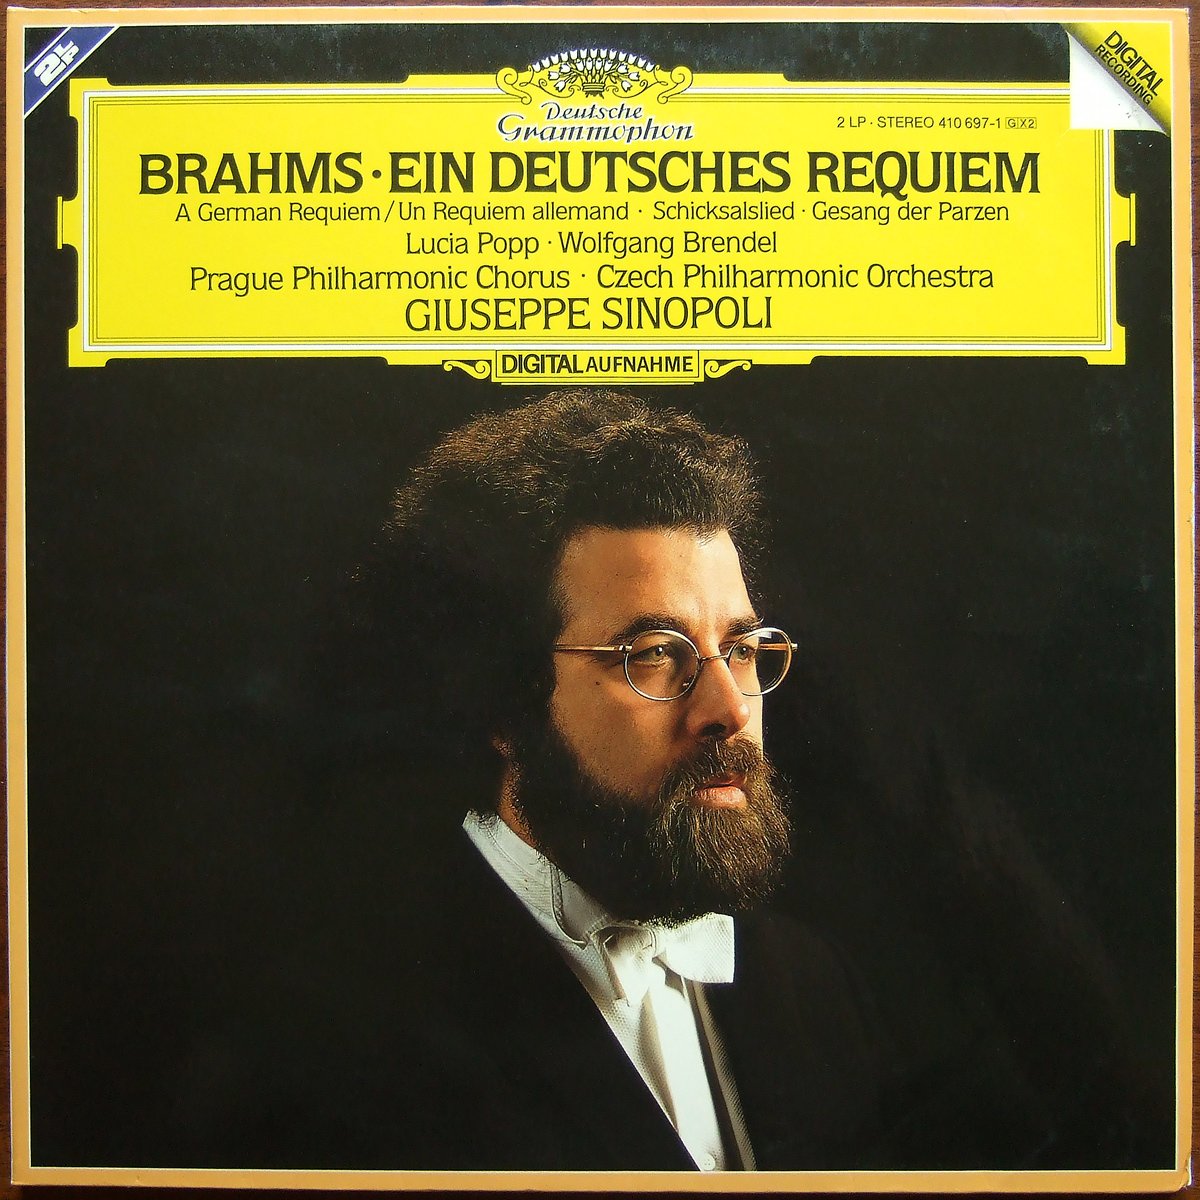 DGG 410 697 Brahms Deutsches Requiem Sinopoli DGG Digital Aufnahme